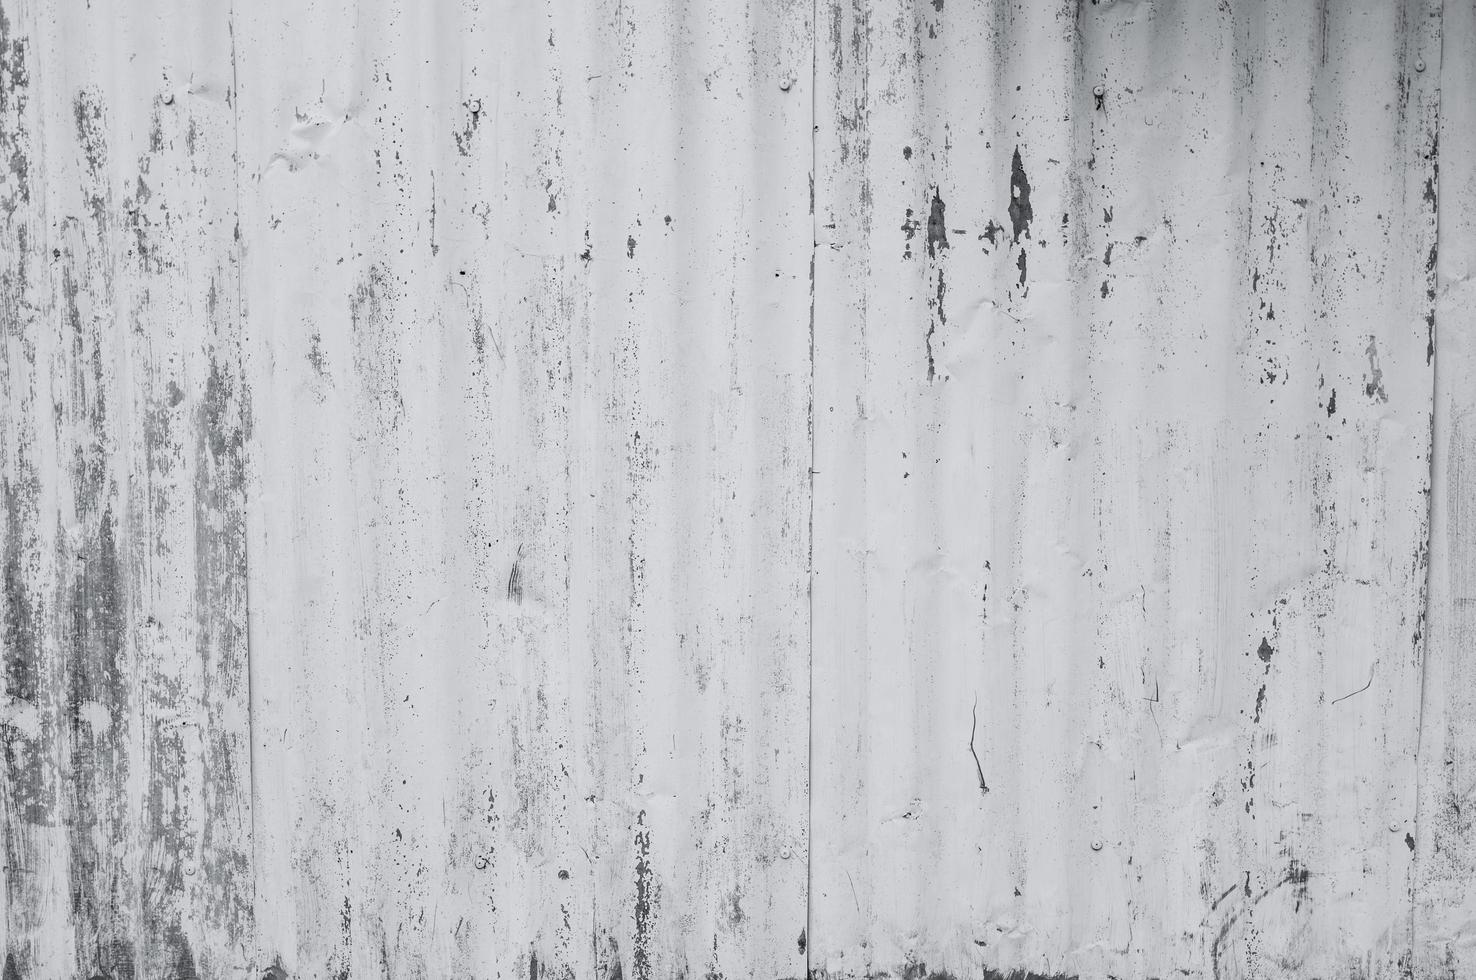 tôle galvanisée peinte en blanc. fond de texture de mur blanc vide. peinture écaillée sur un mur blanc. tôle galvanisée grise à rayures déformées. fond blanc et gris vide pour une durée de vie minimale. photo